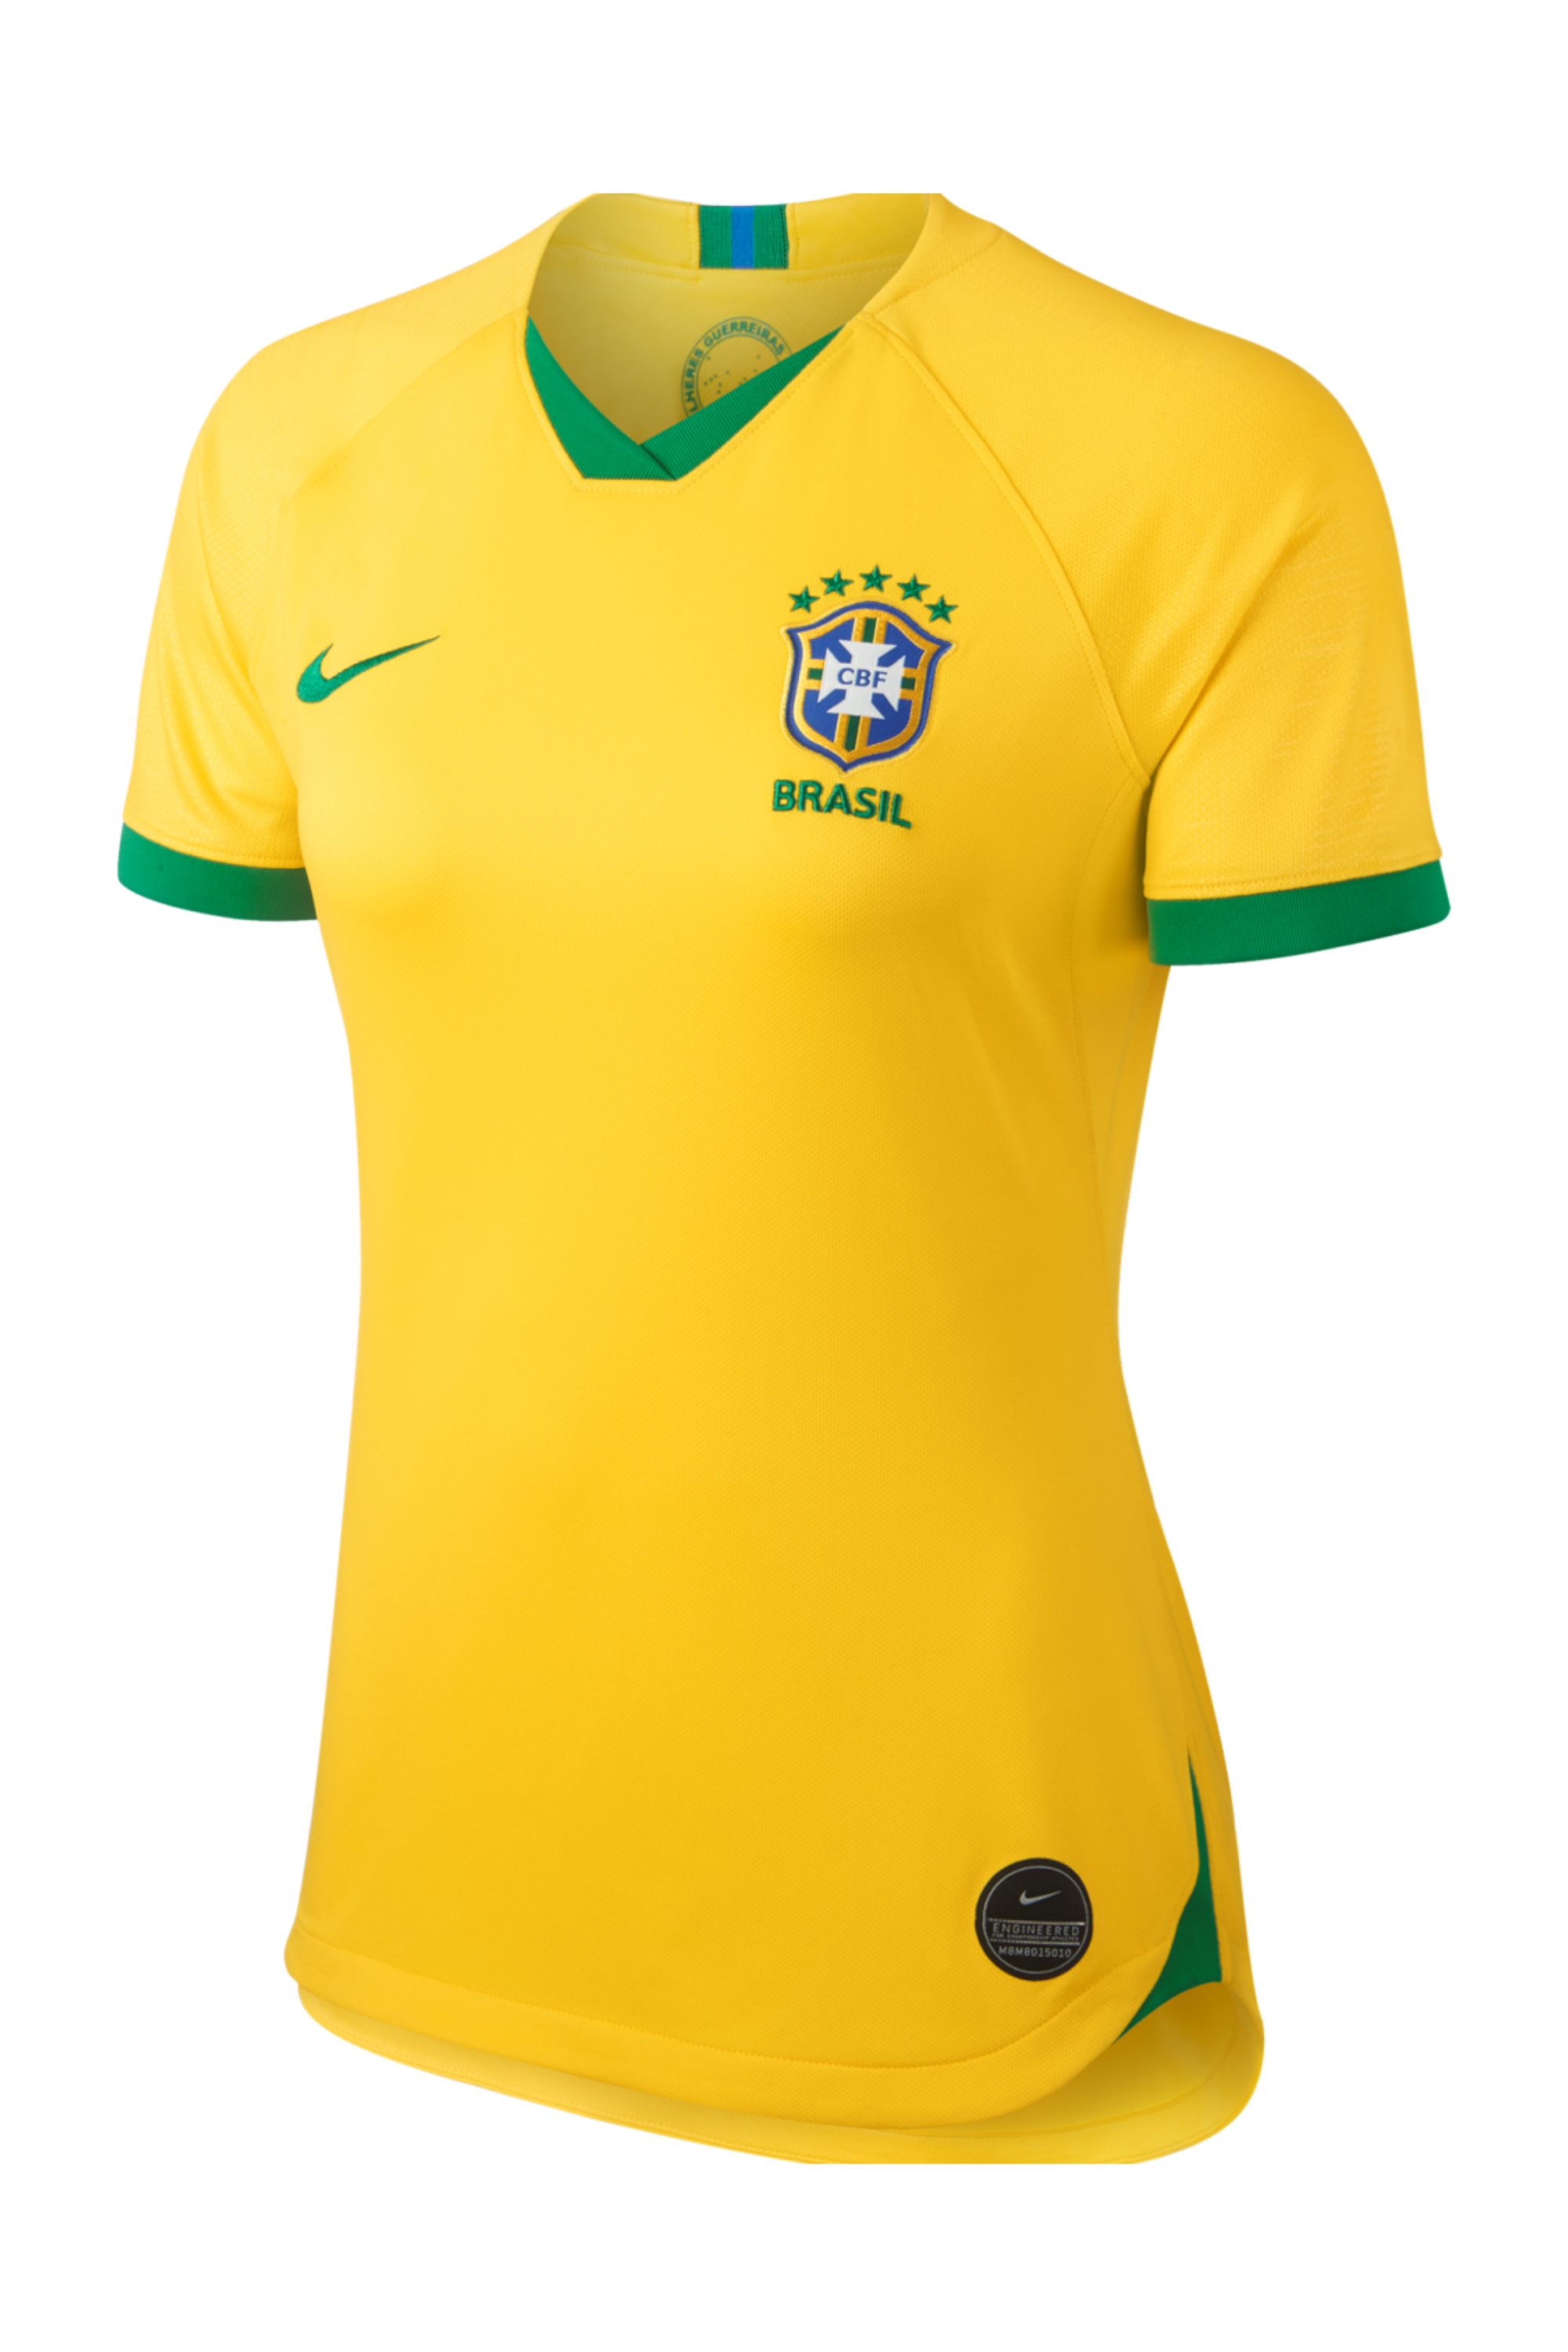 cbf brazil jersey